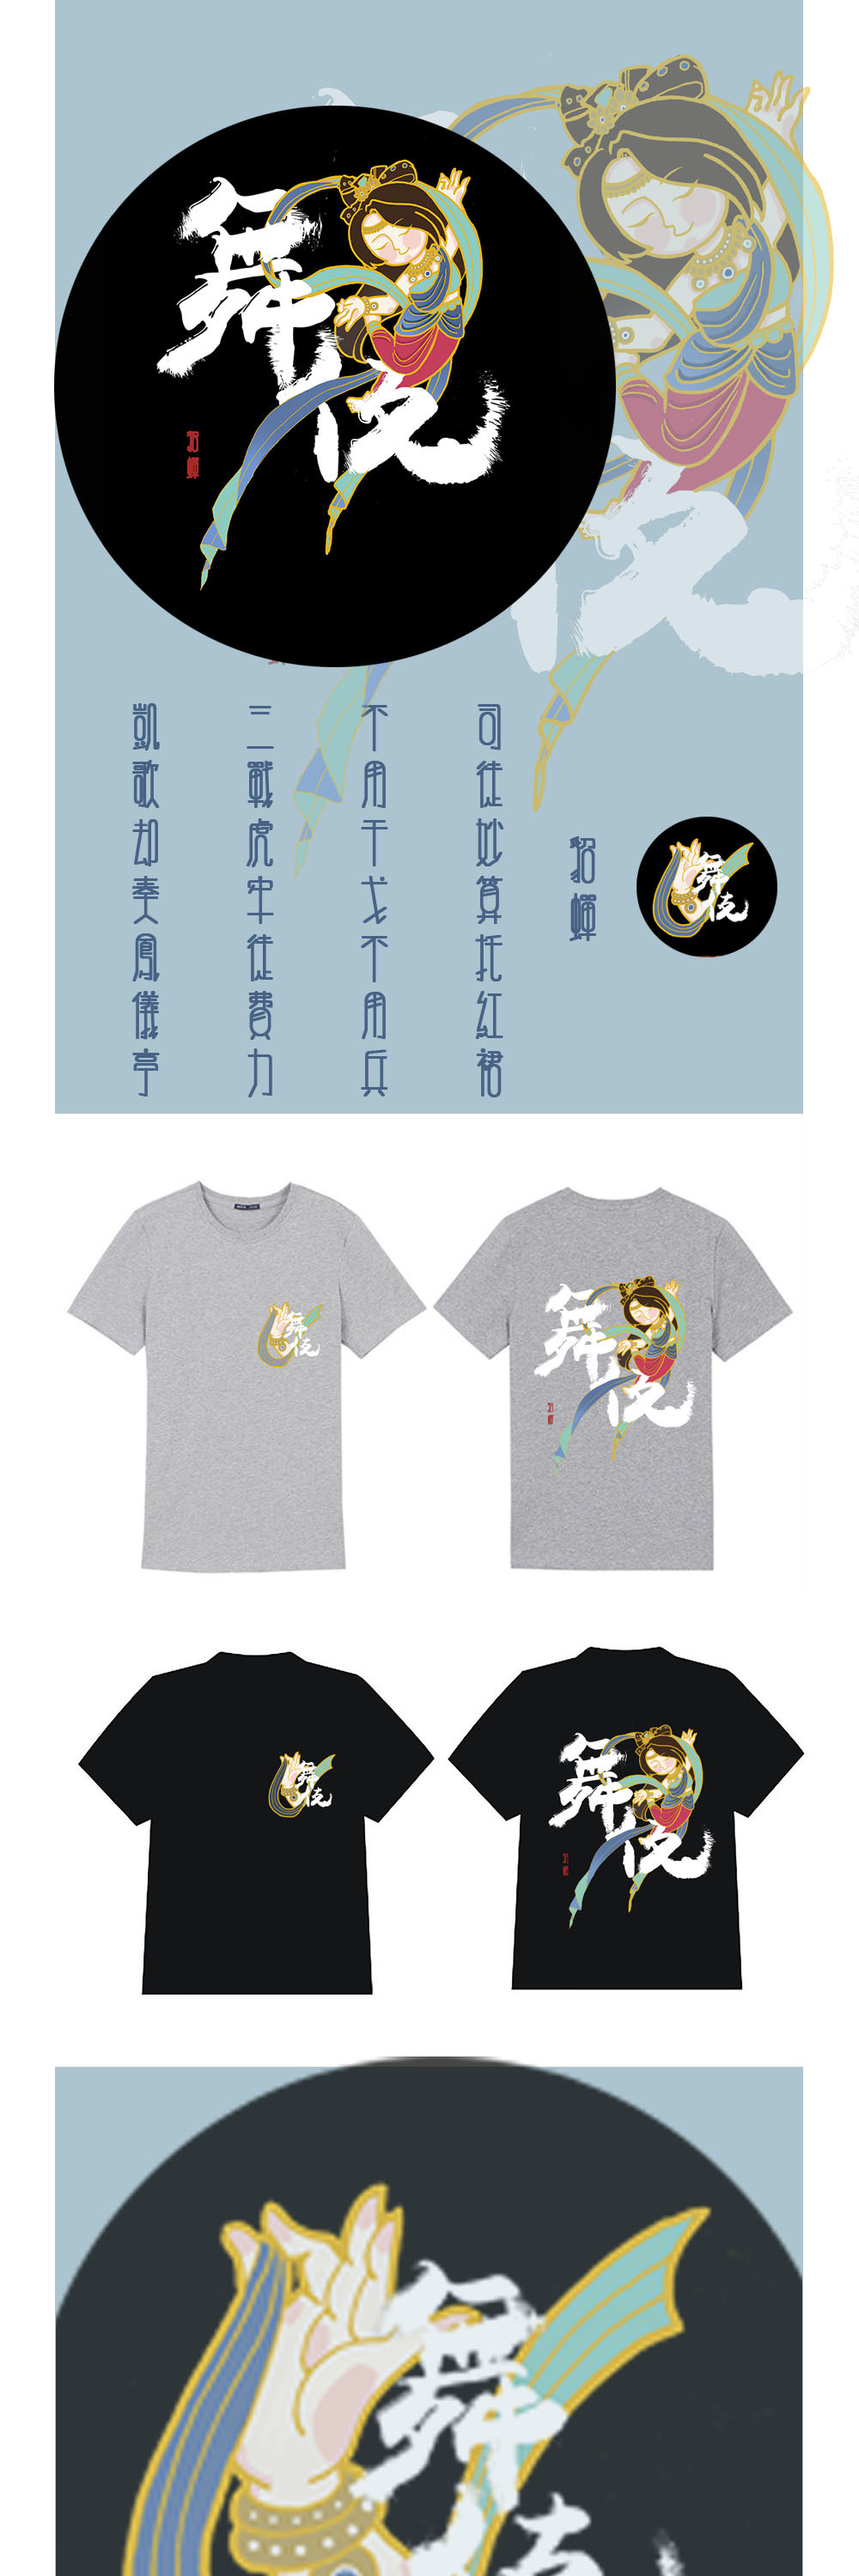 敦煌飞天x王者荣耀角色的图案设计、文化衫